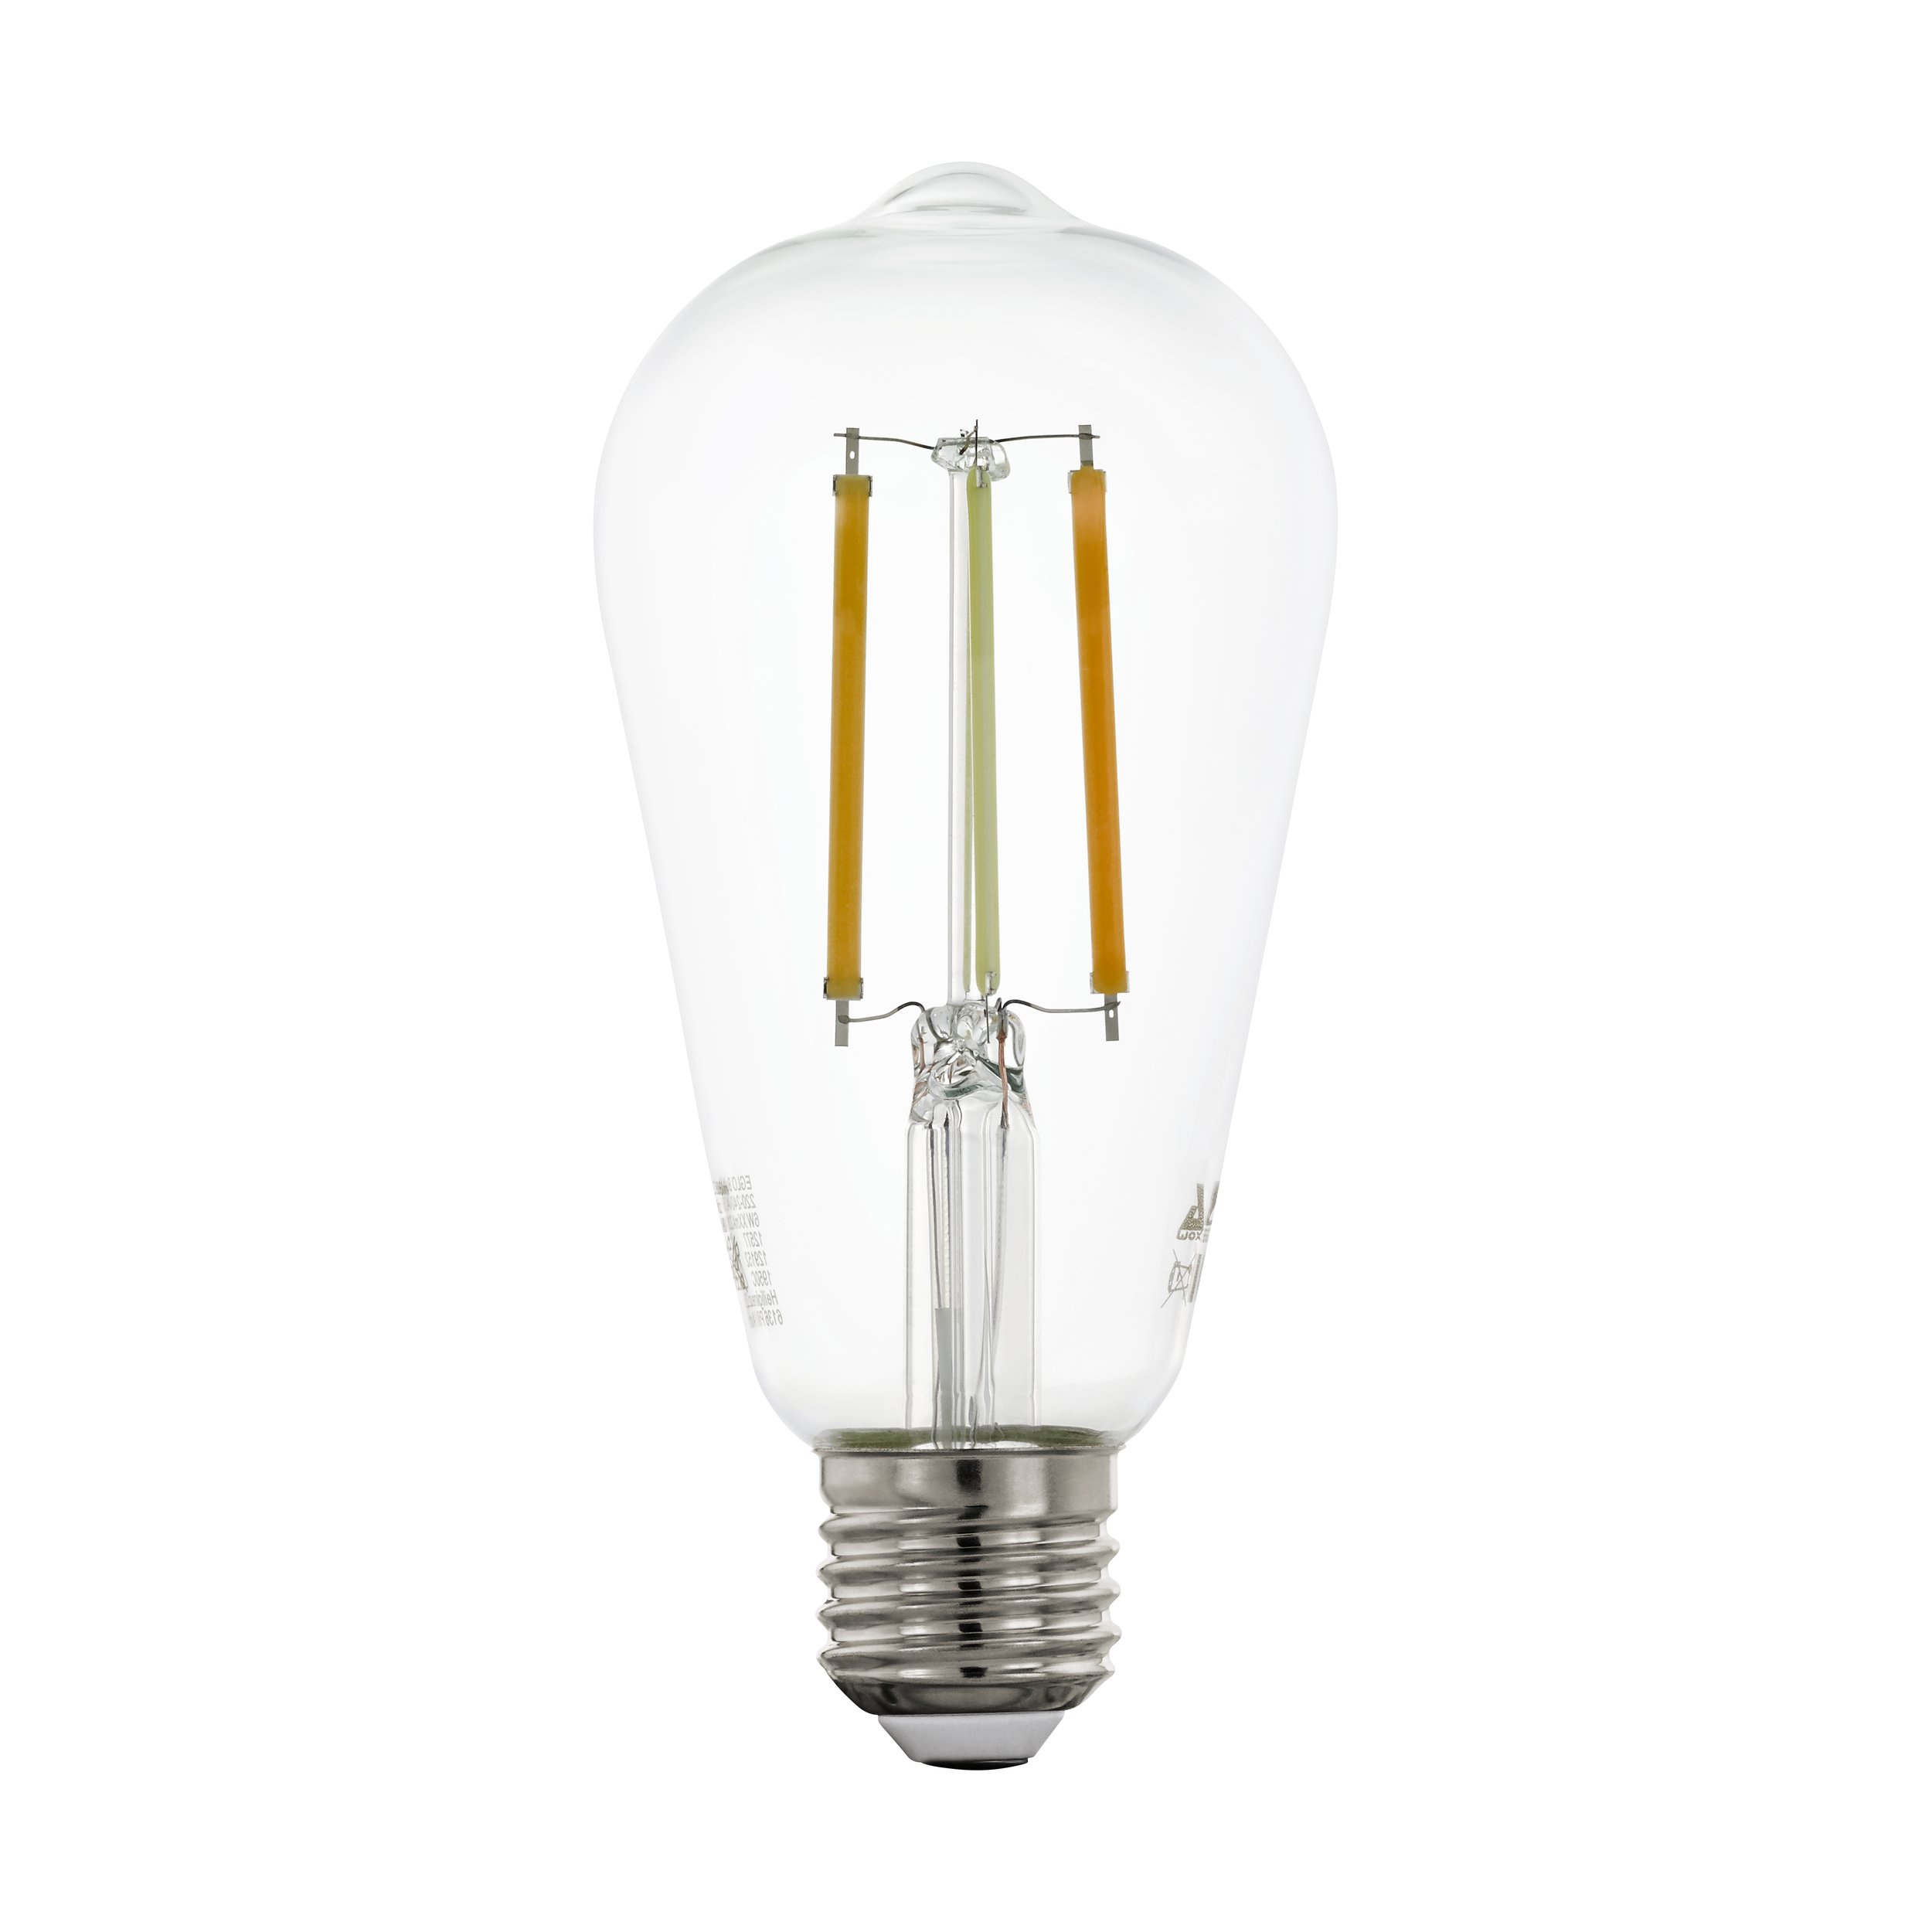 Ampoule capsule LED G4 blanc chaud 200 lm dimmable 1,8 W 2 pièces EGLO